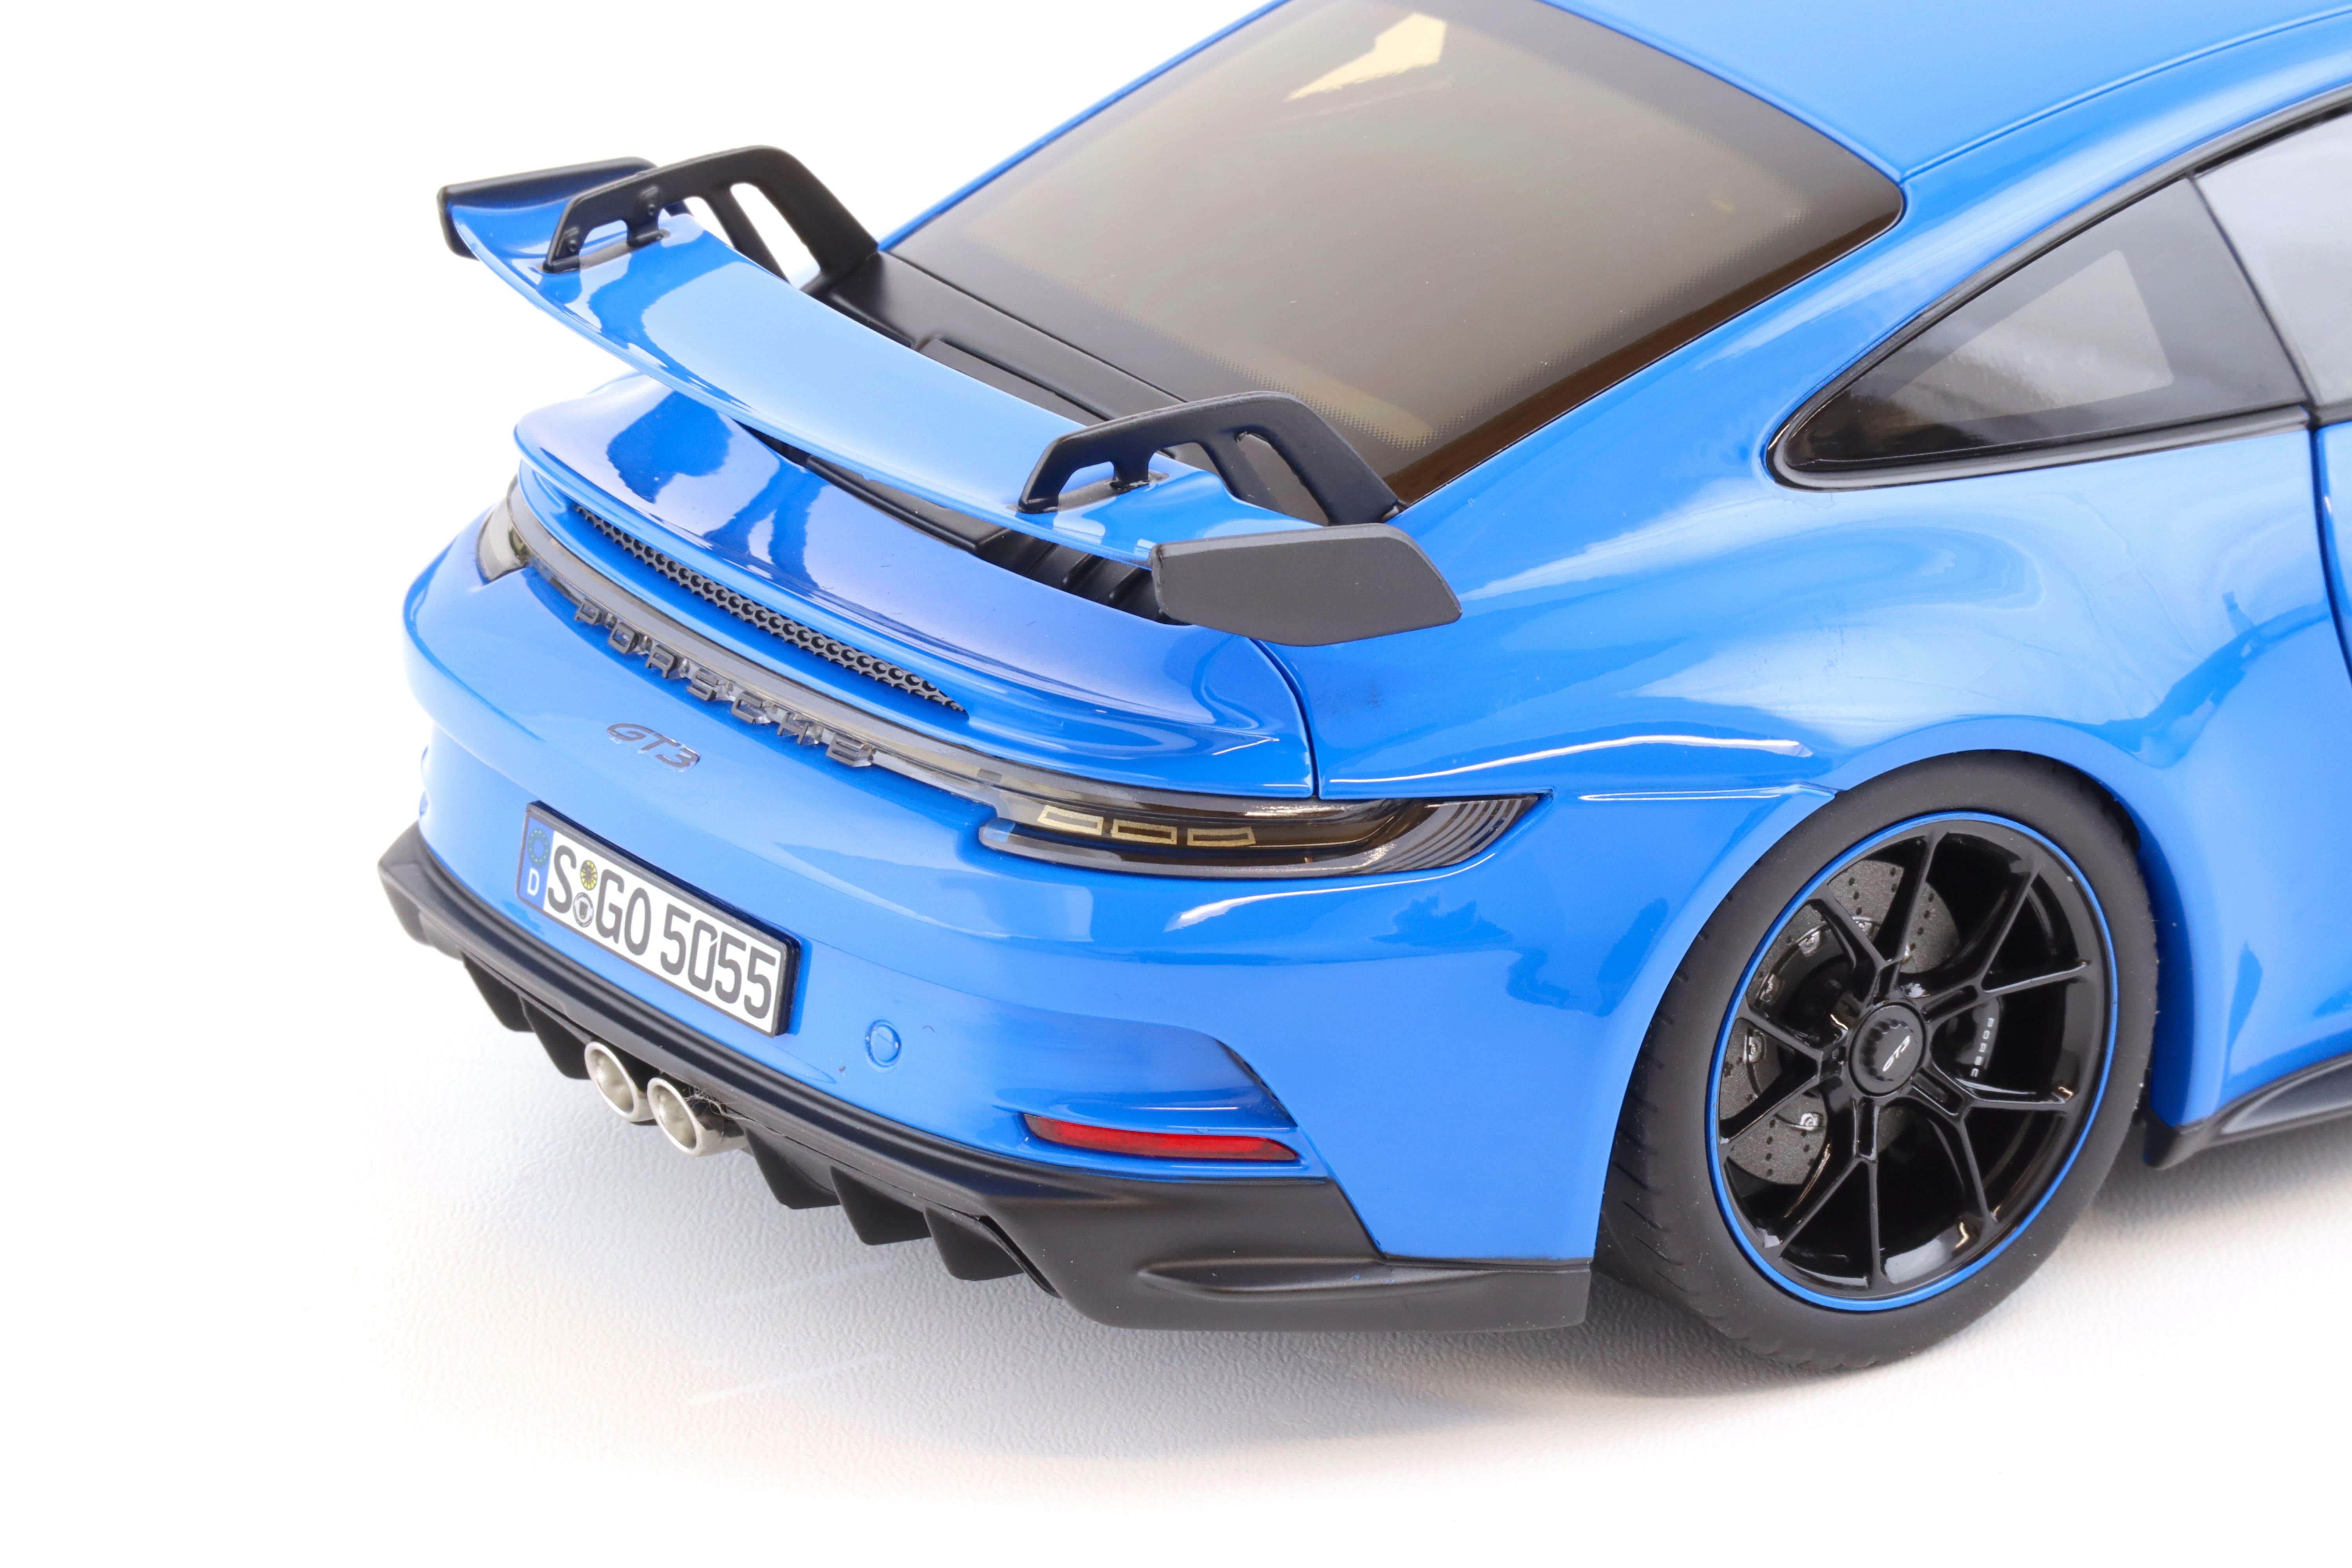 1:18 Norev Porsche 911 (992) GT3 Coupe Shark blue 2021 - Limited 504 pcs.